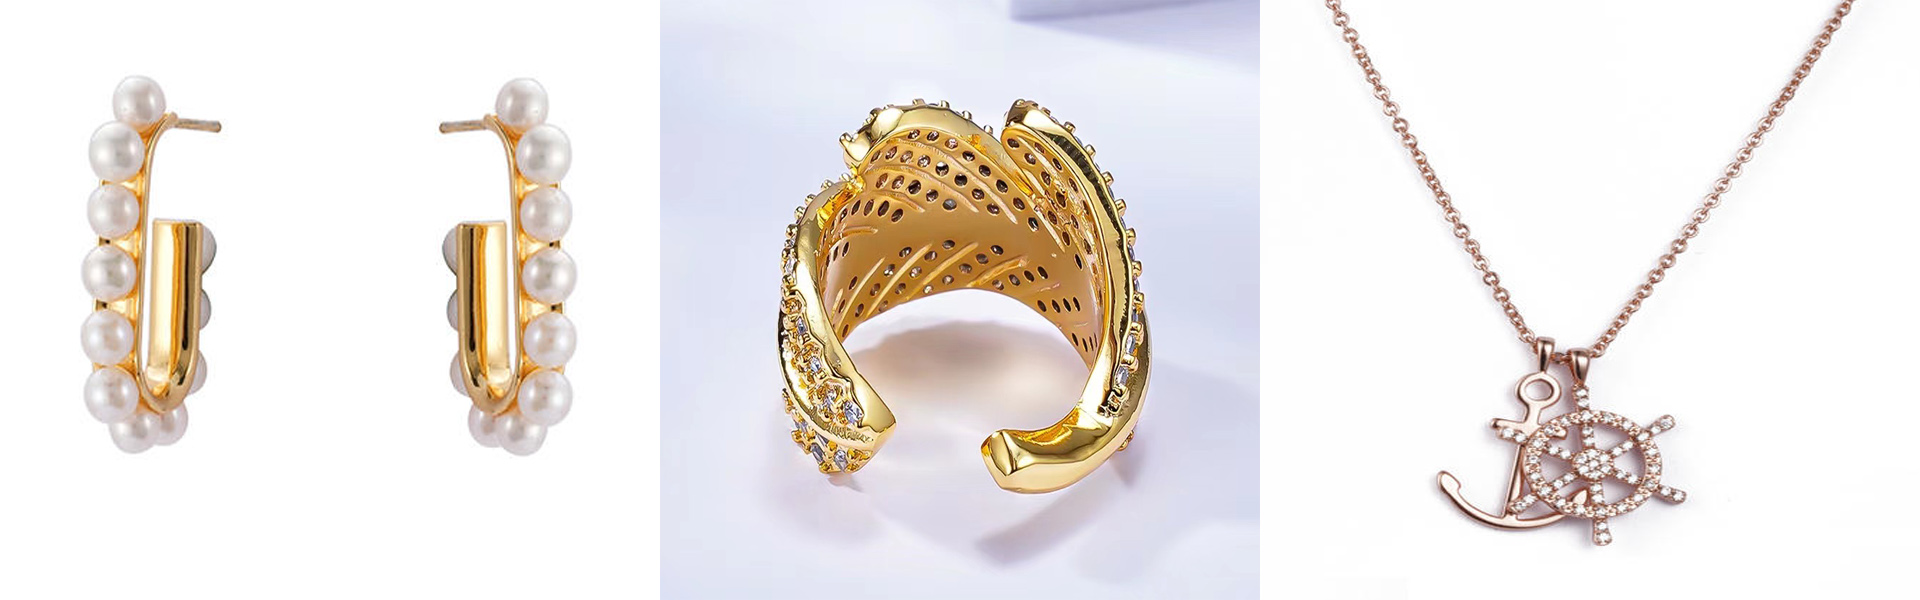 Dongguan Yucheng jewelry Co Ltd